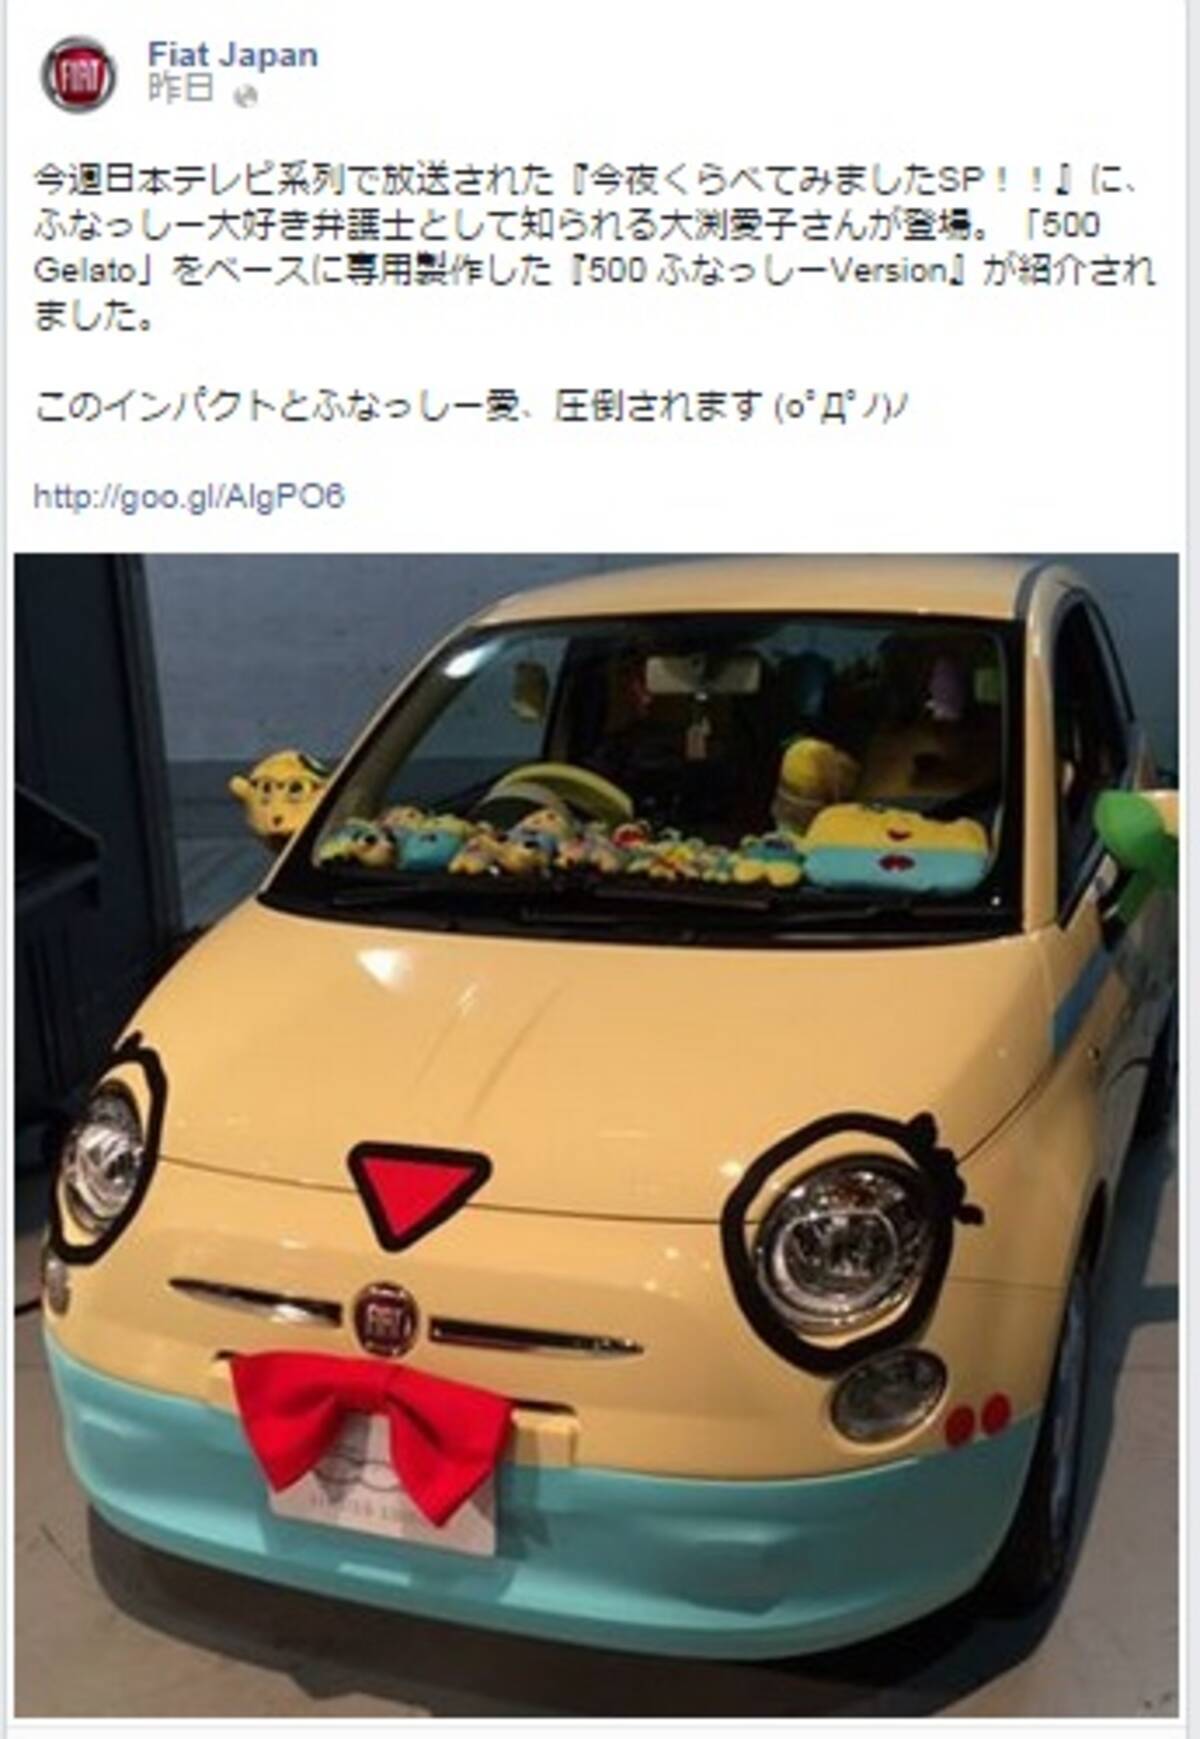 大渕愛子弁護士のfiat ふなっしーカー は 夢の車 か ブランドイメージにマイナス か 14年9月19日 エキサイトニュース